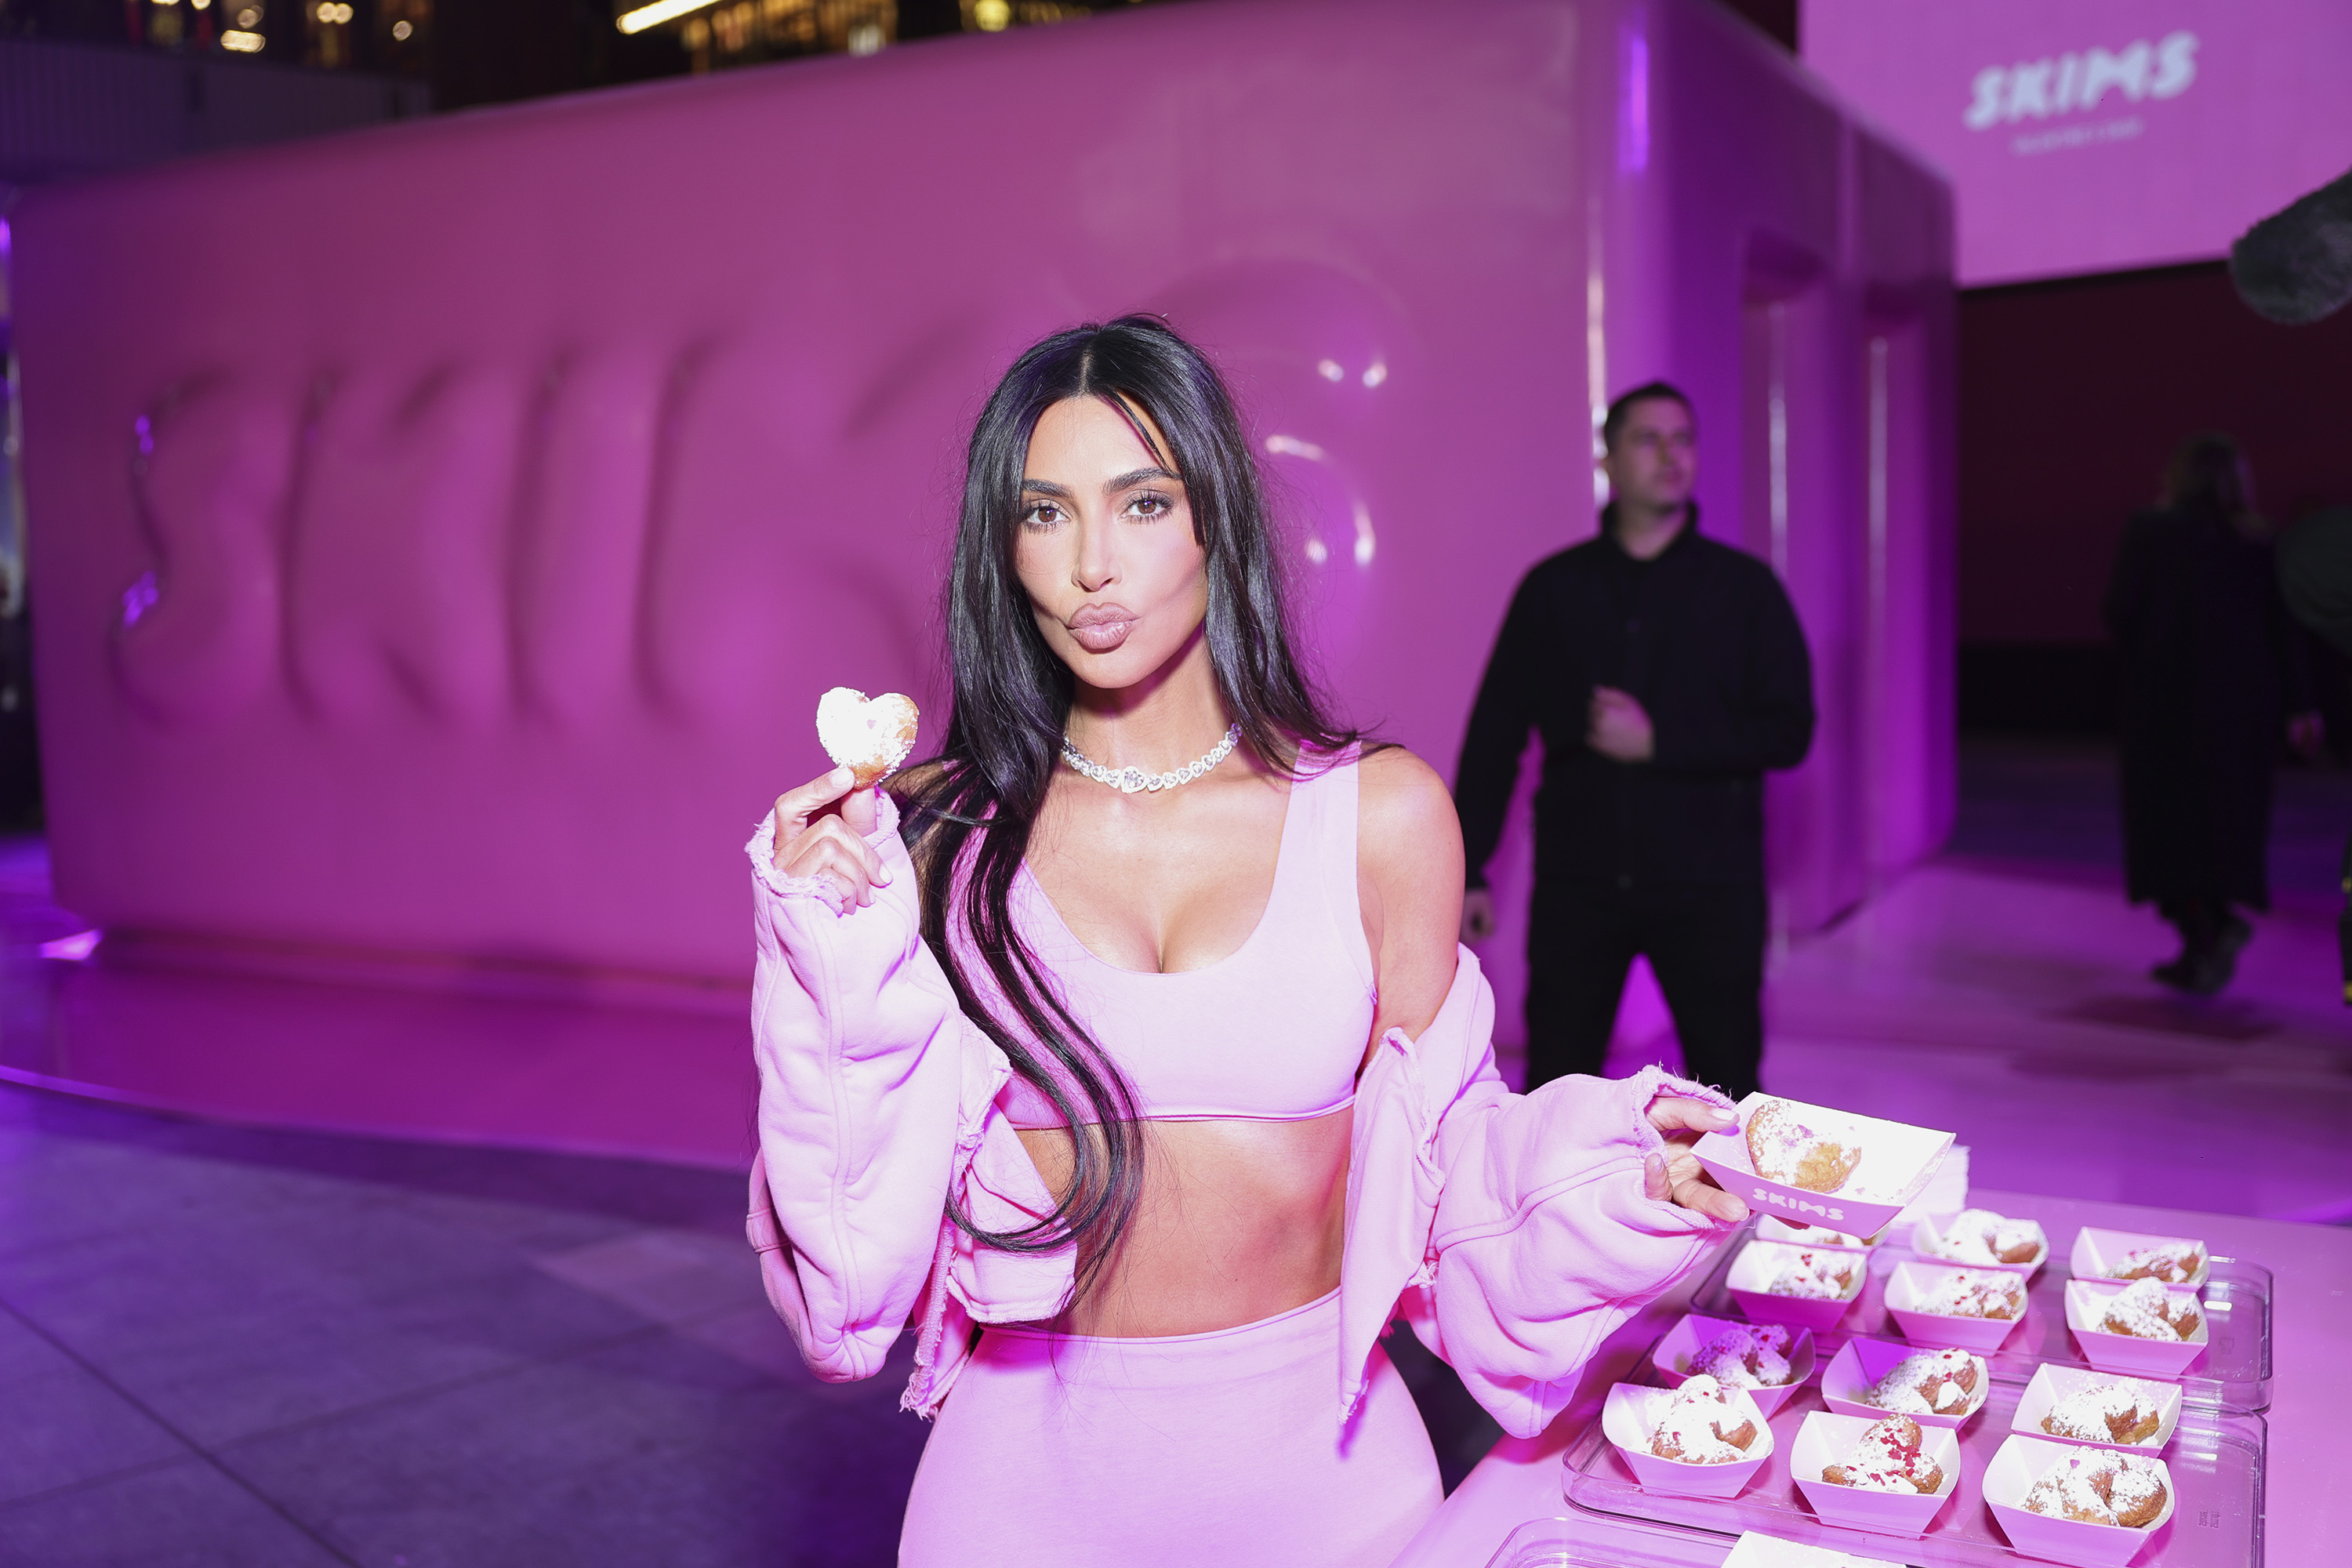 SEE IT: Kim Kardashian sings along to Kanye West's 'Famous' lyric